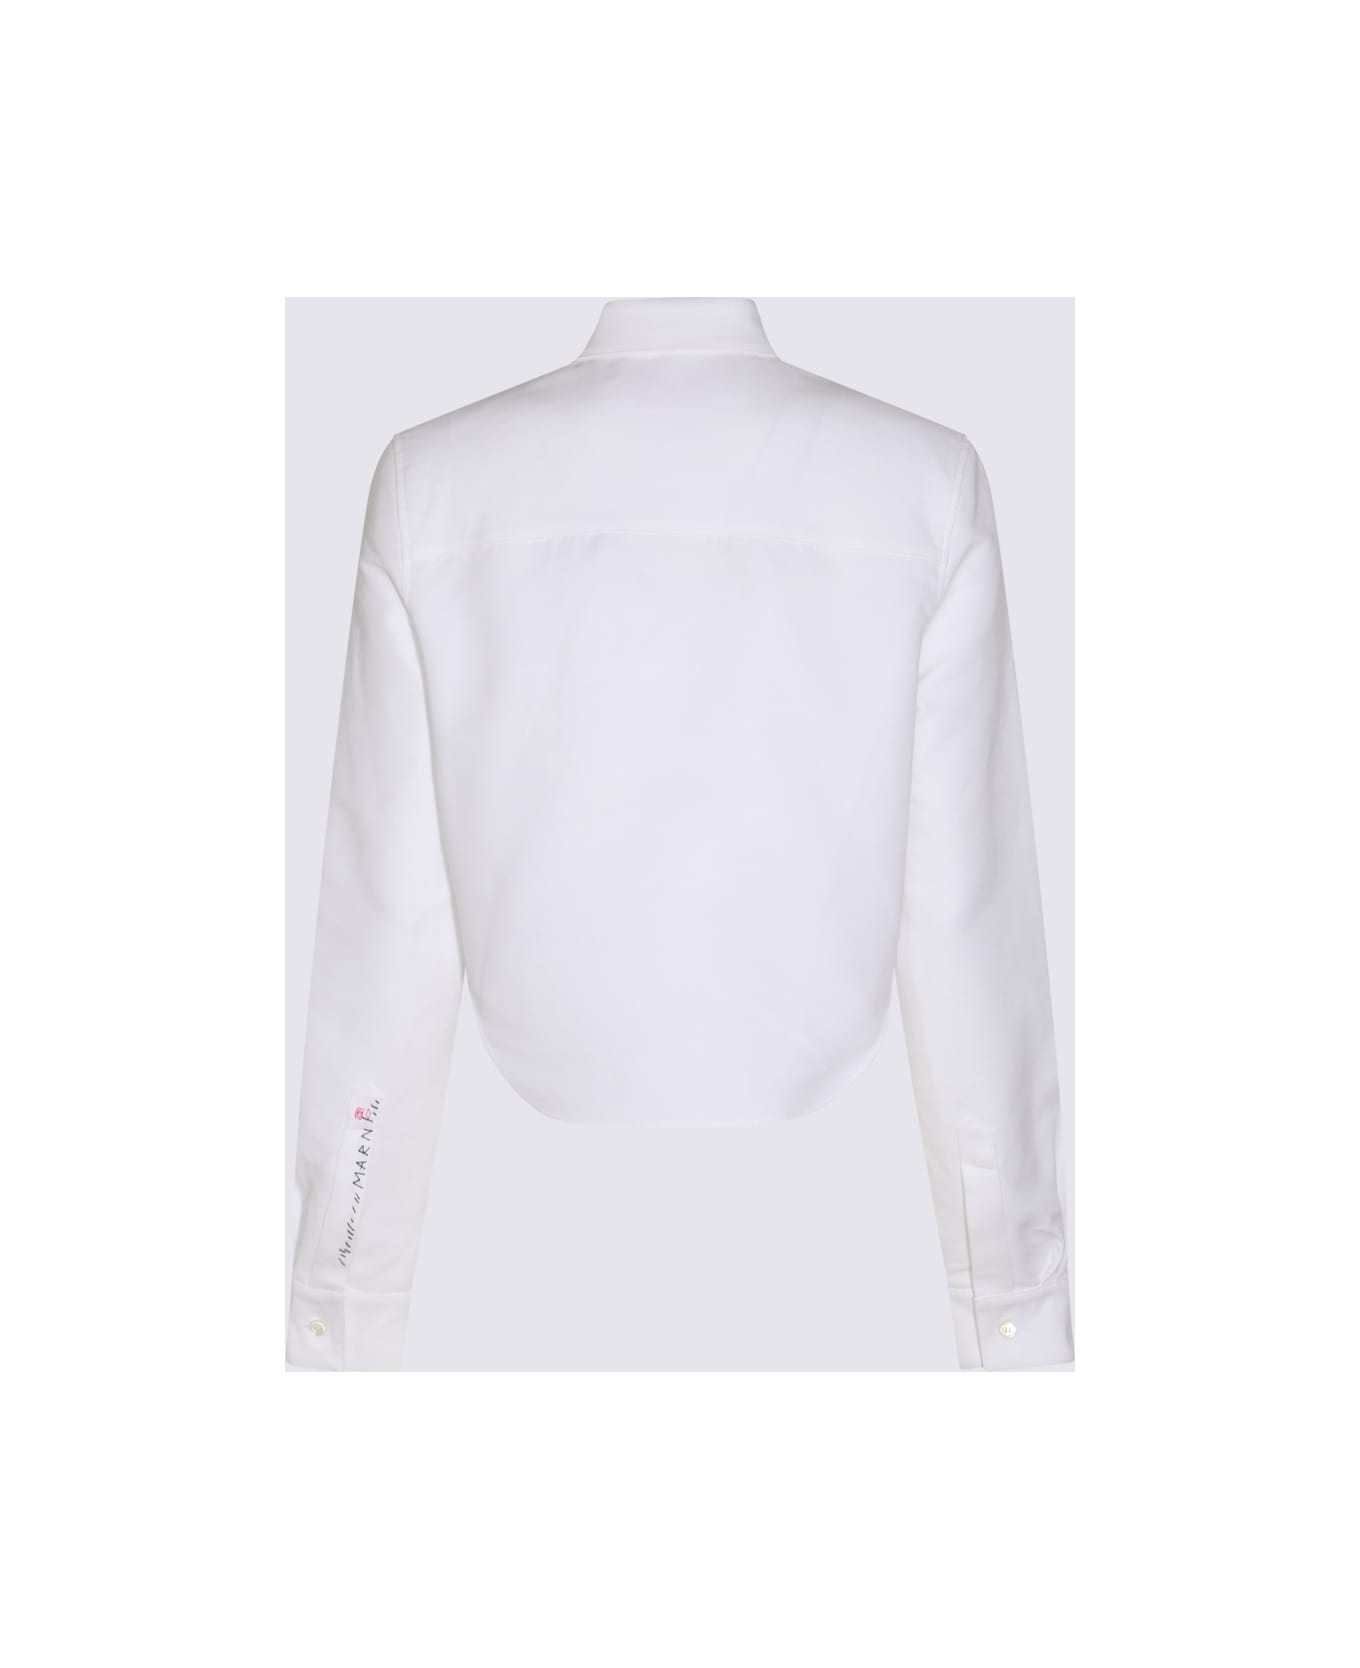 Marni White Cotton Shirt - LILY WHITE シャツ